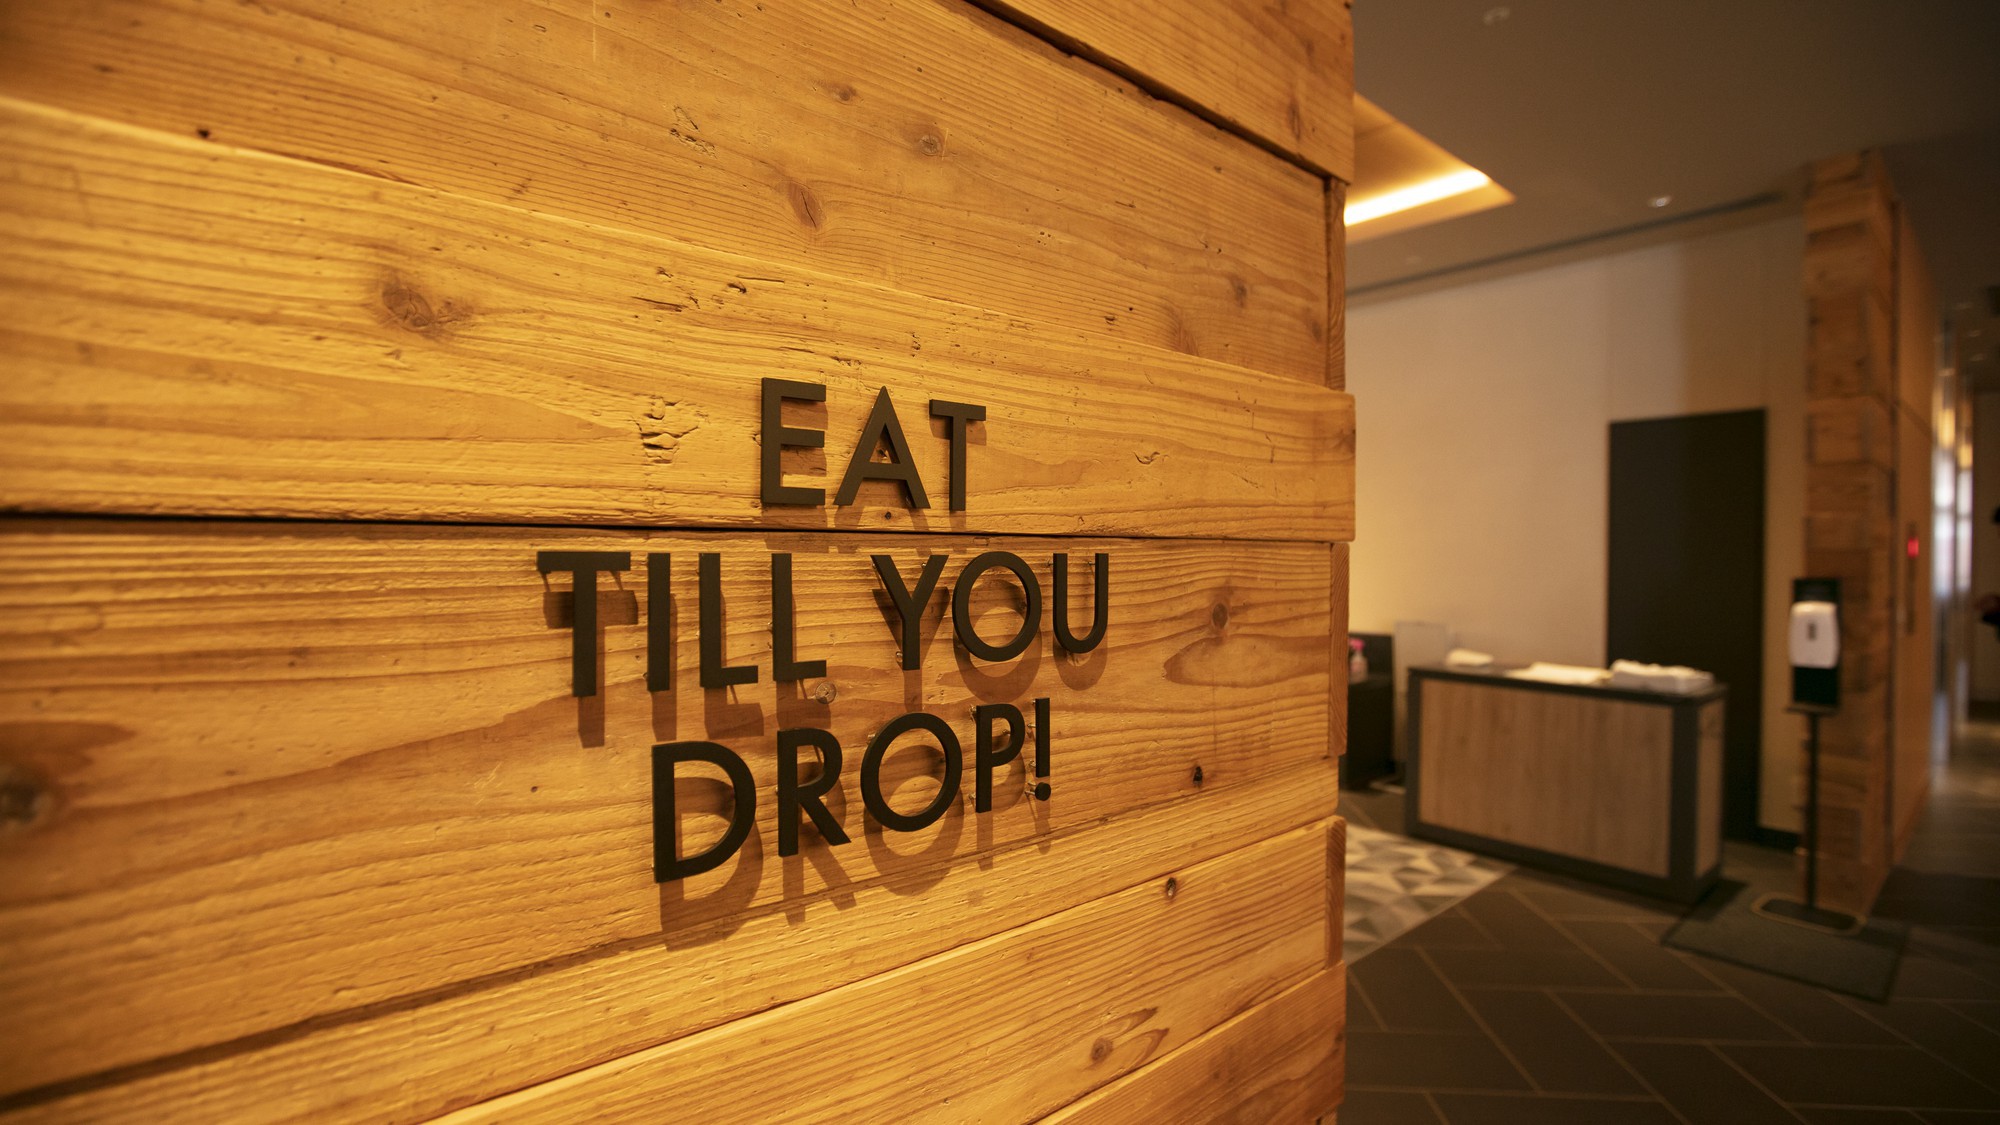 レストラン「EAT TILL YOU DROP!」